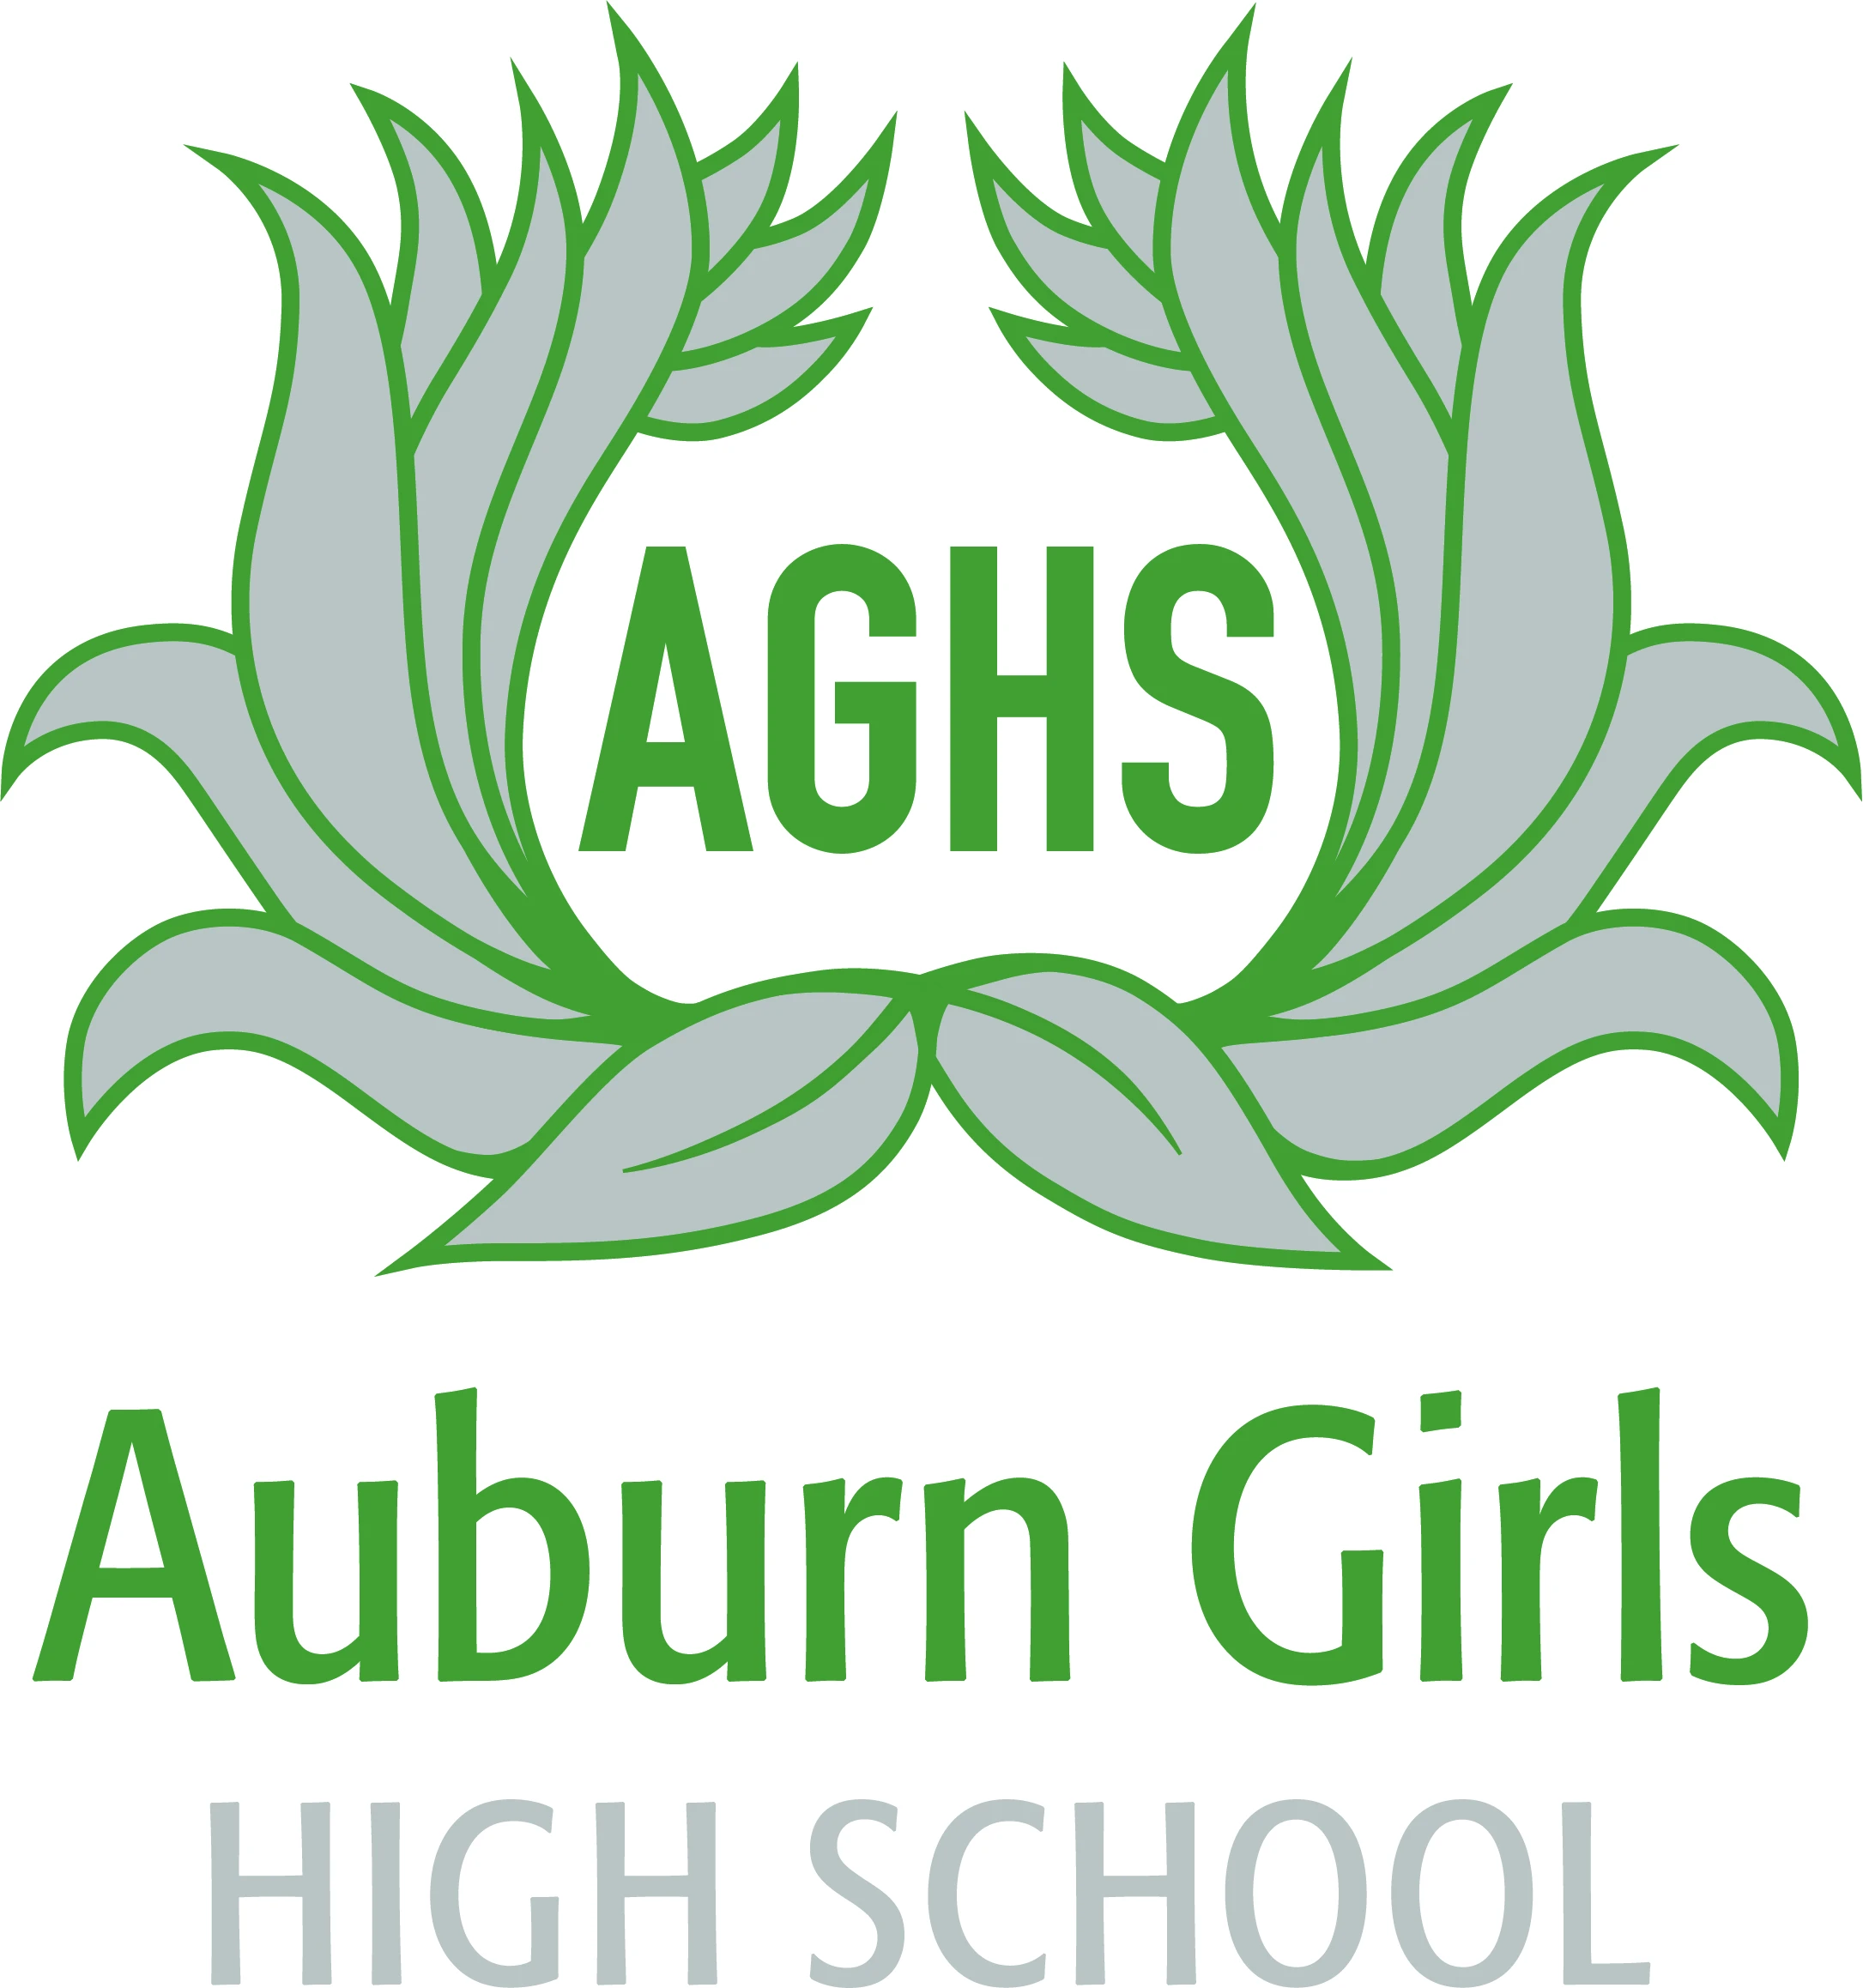 Auburn Girls High School